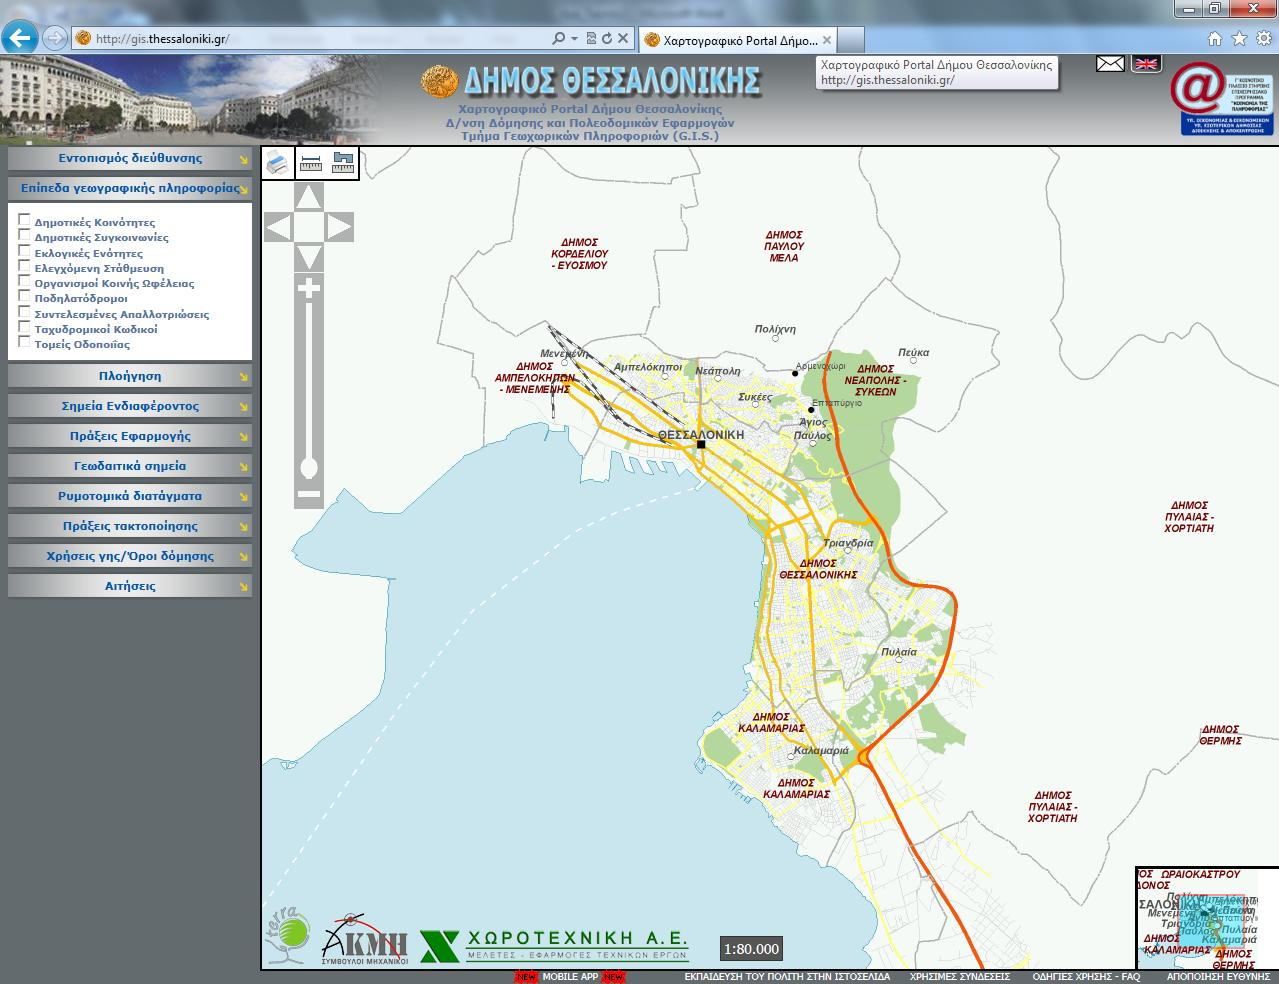 Τρισδιάστατη χαρτογραφική αναπαράσταση αστικών περιοχών με τη χρήση μεταβαλλόμενης προοπτικής: εφαρμογή στη Θεσσαλονίκη Εικόνα 4.1.